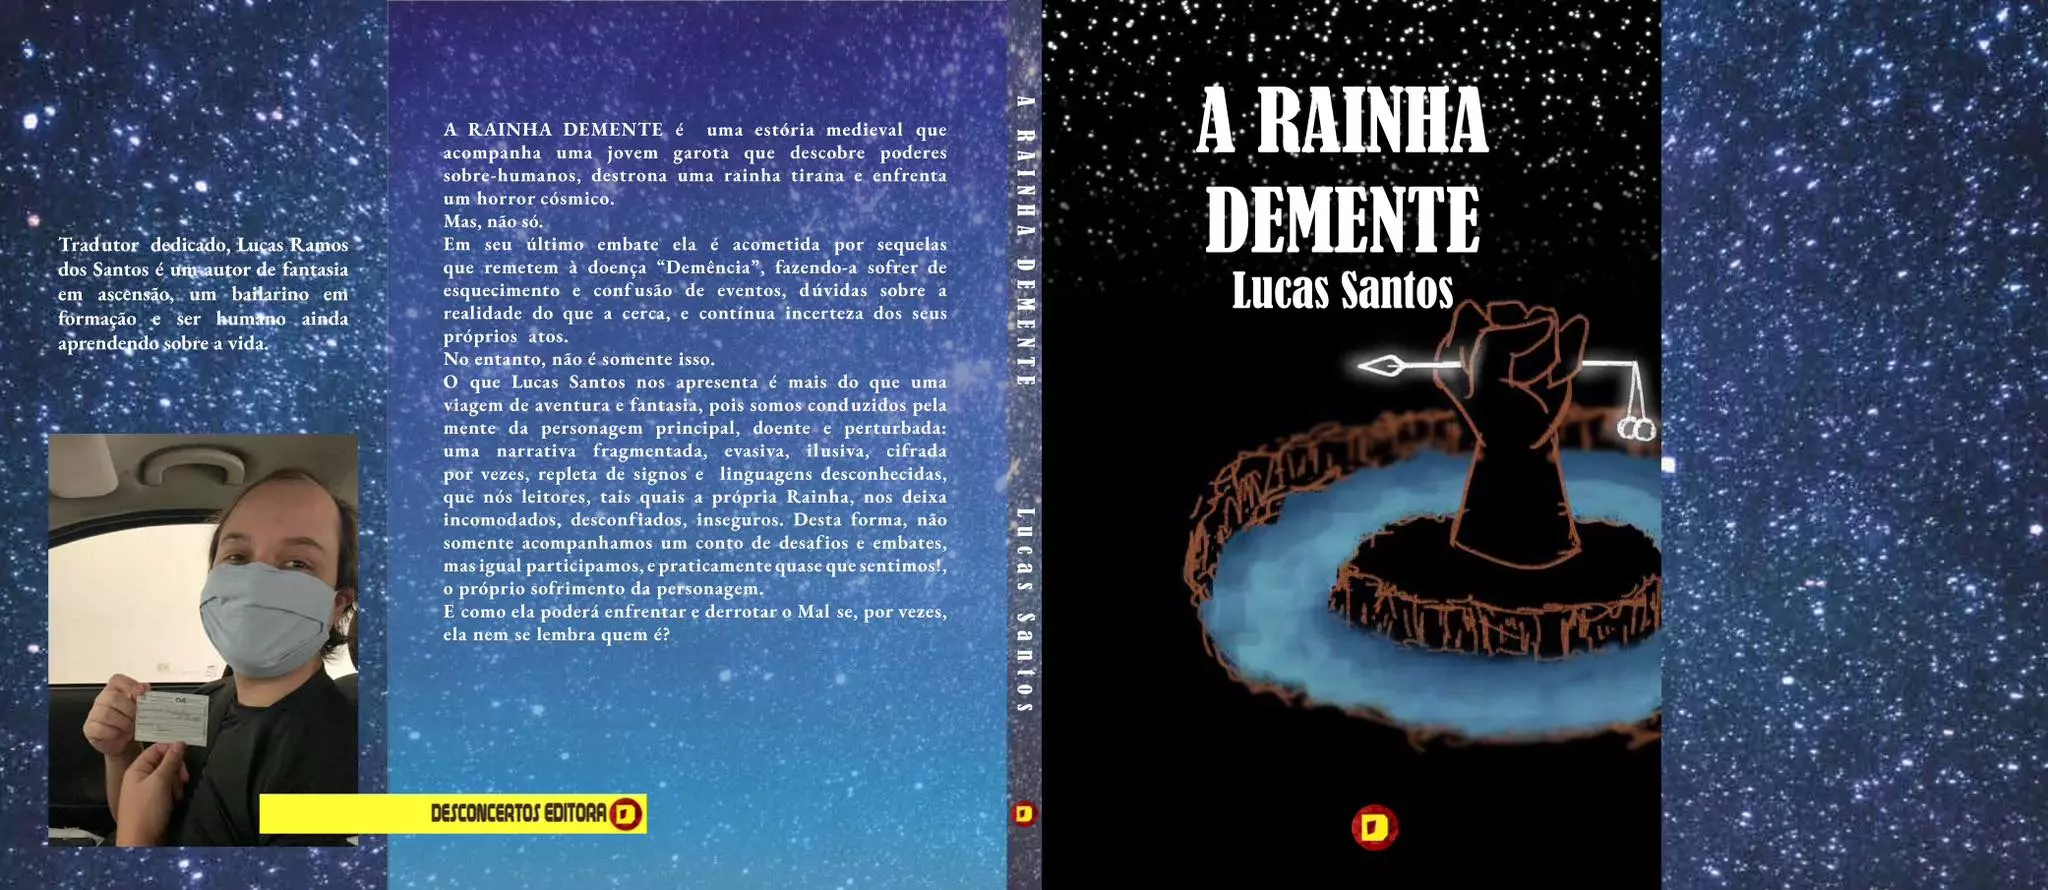 Lucas Ramos dos Santos - A Rainha DEmente